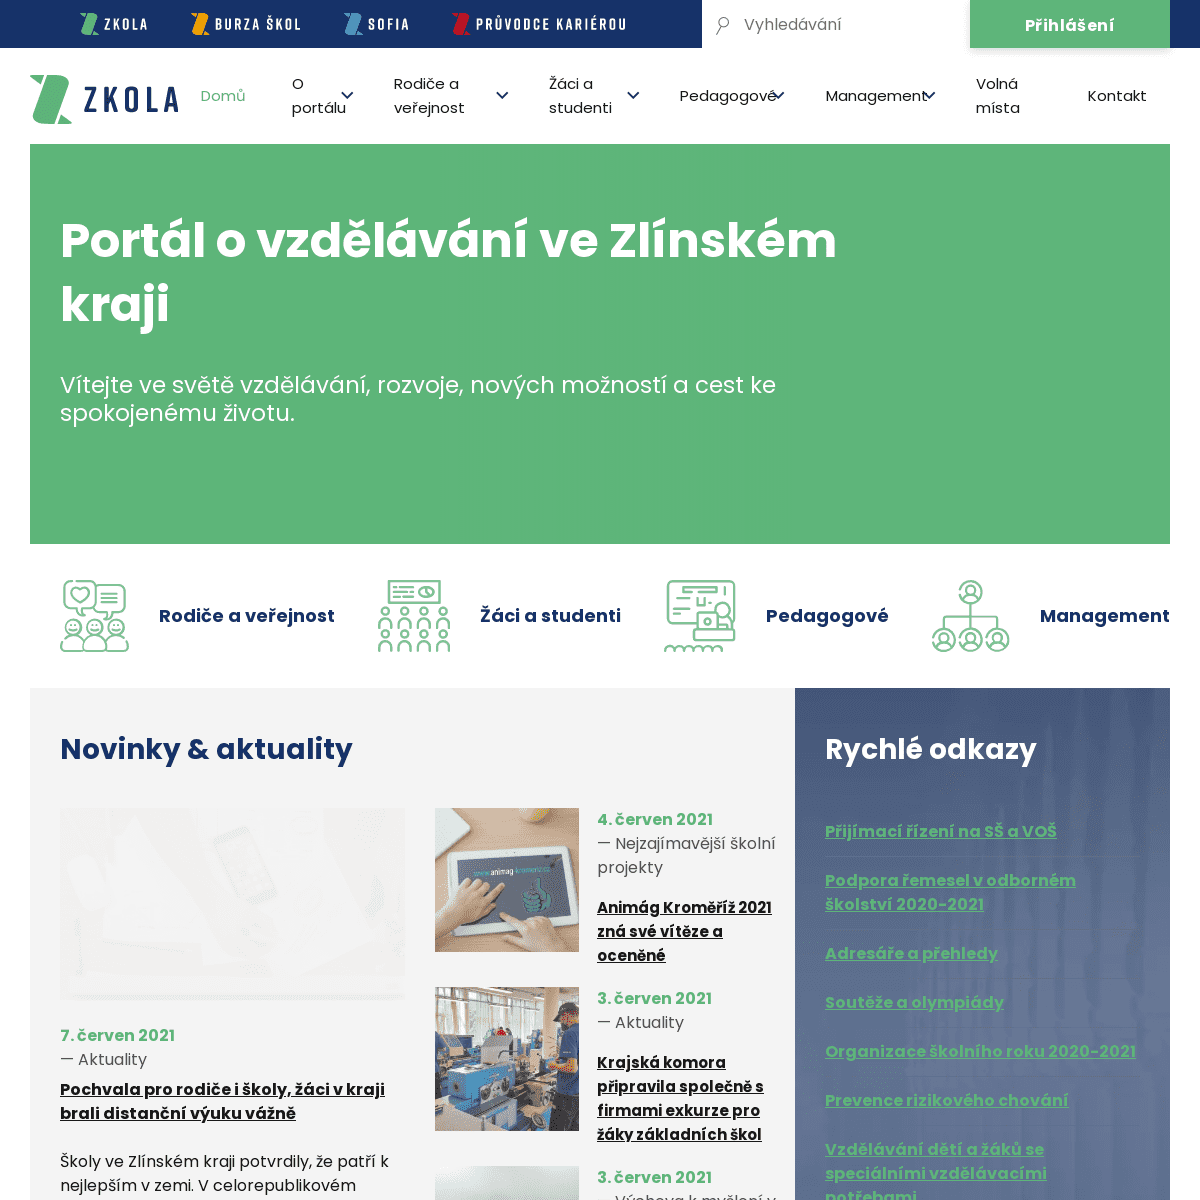 A complete backup of https://zkola.cz